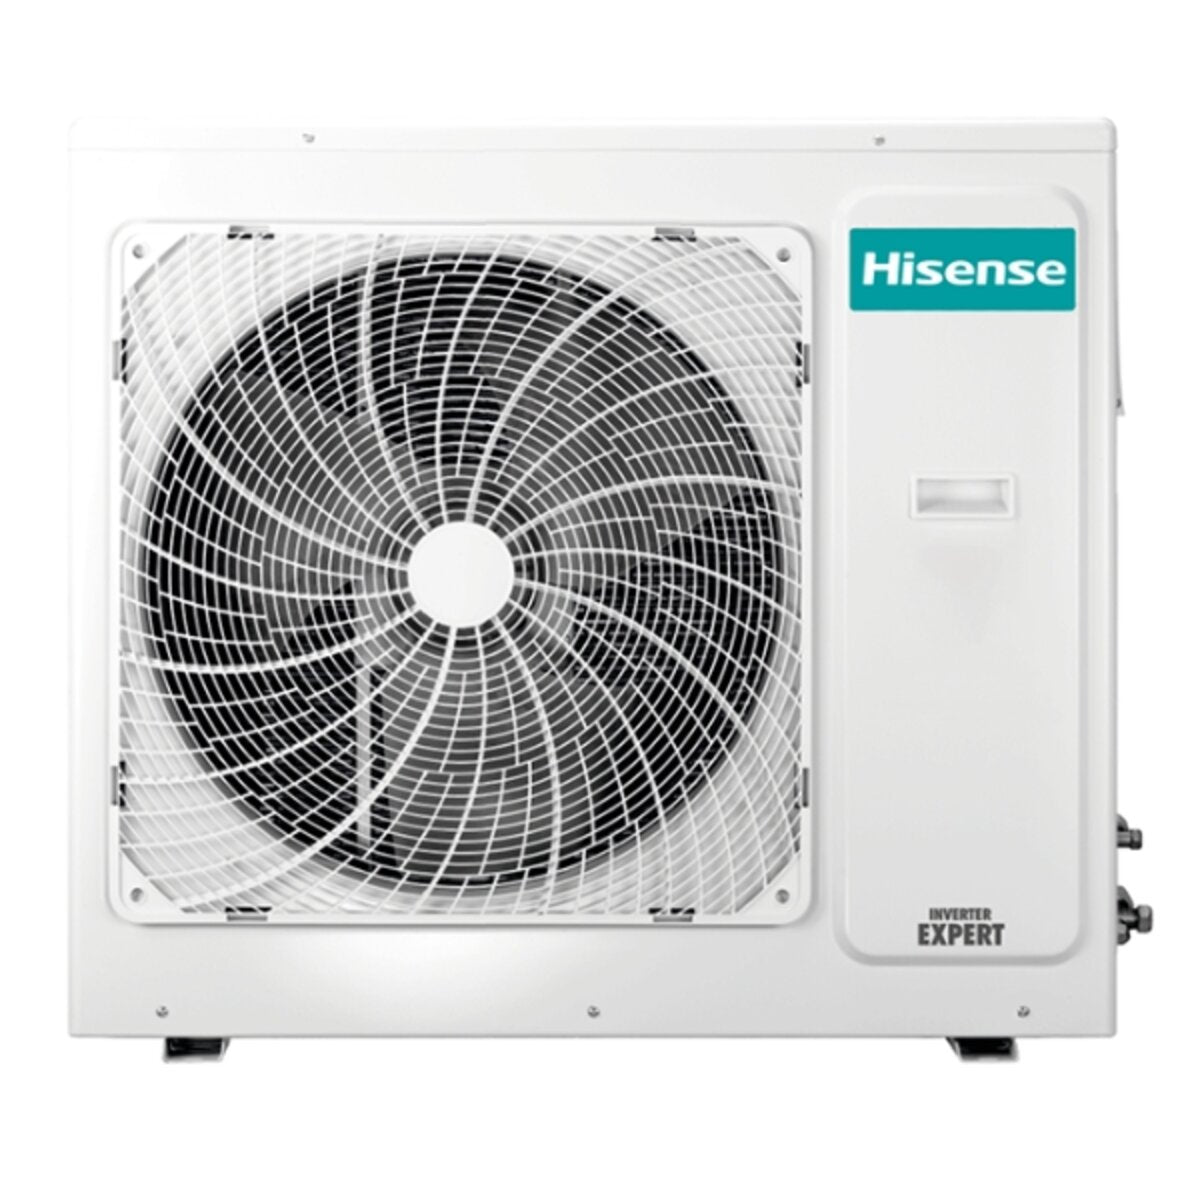 Hisense Hi-Comfort Quadri Split Klimaanlage 7000 + 12000 + 12000 + 12000 BTU Wechselrichter A++ WLAN Außengerät 10,0 kW